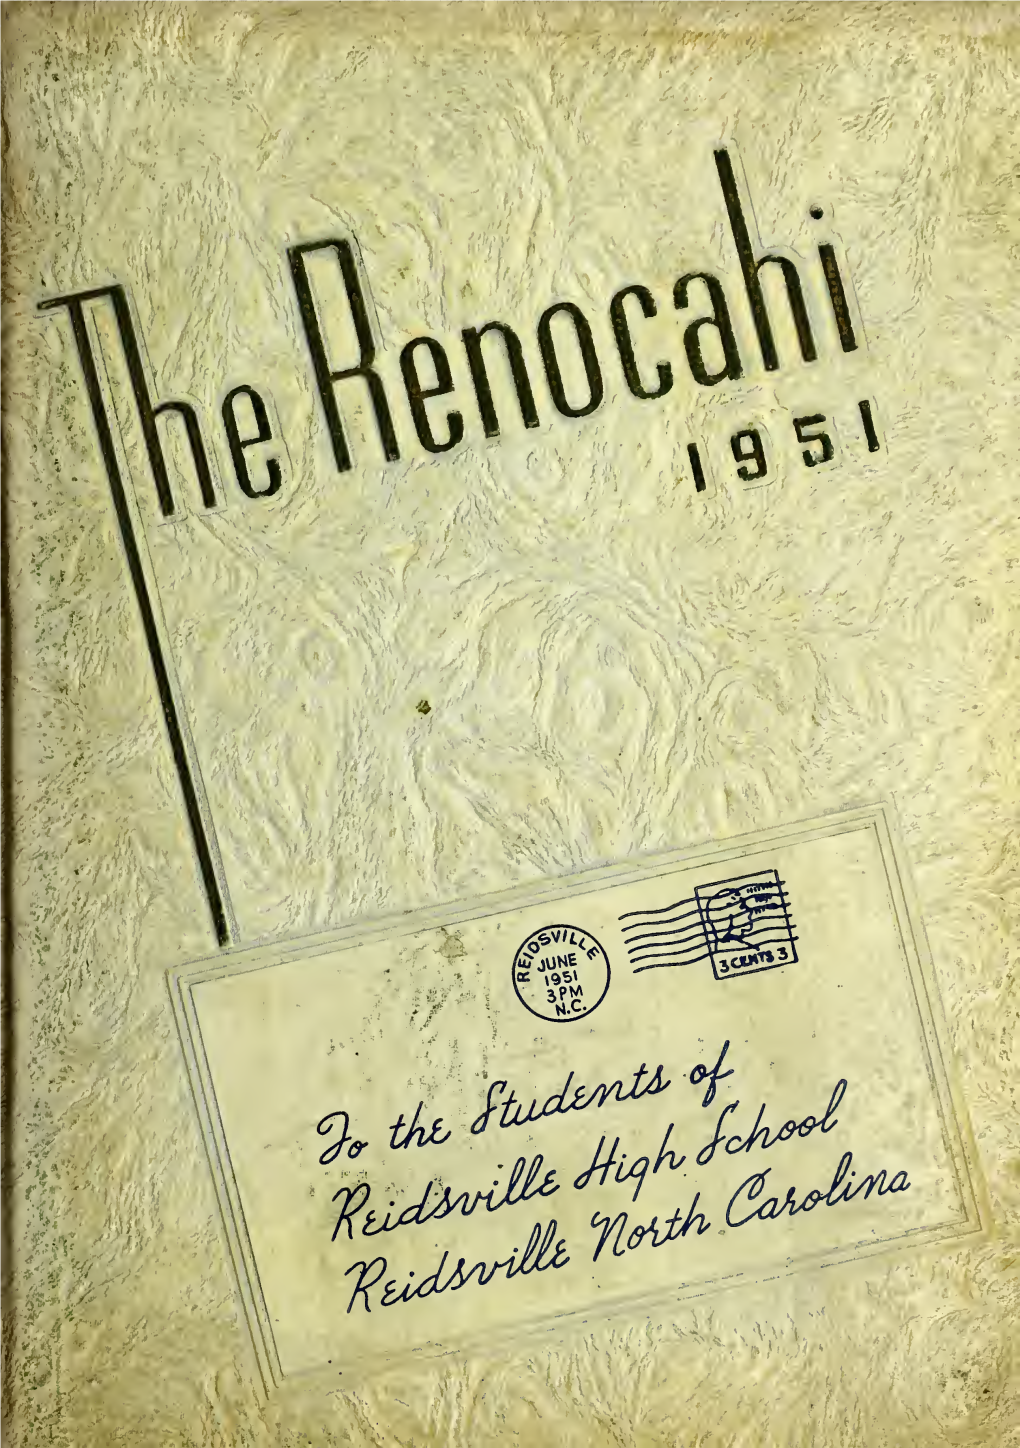 Reidsville High School Yearbook, "Renocahi", 1951